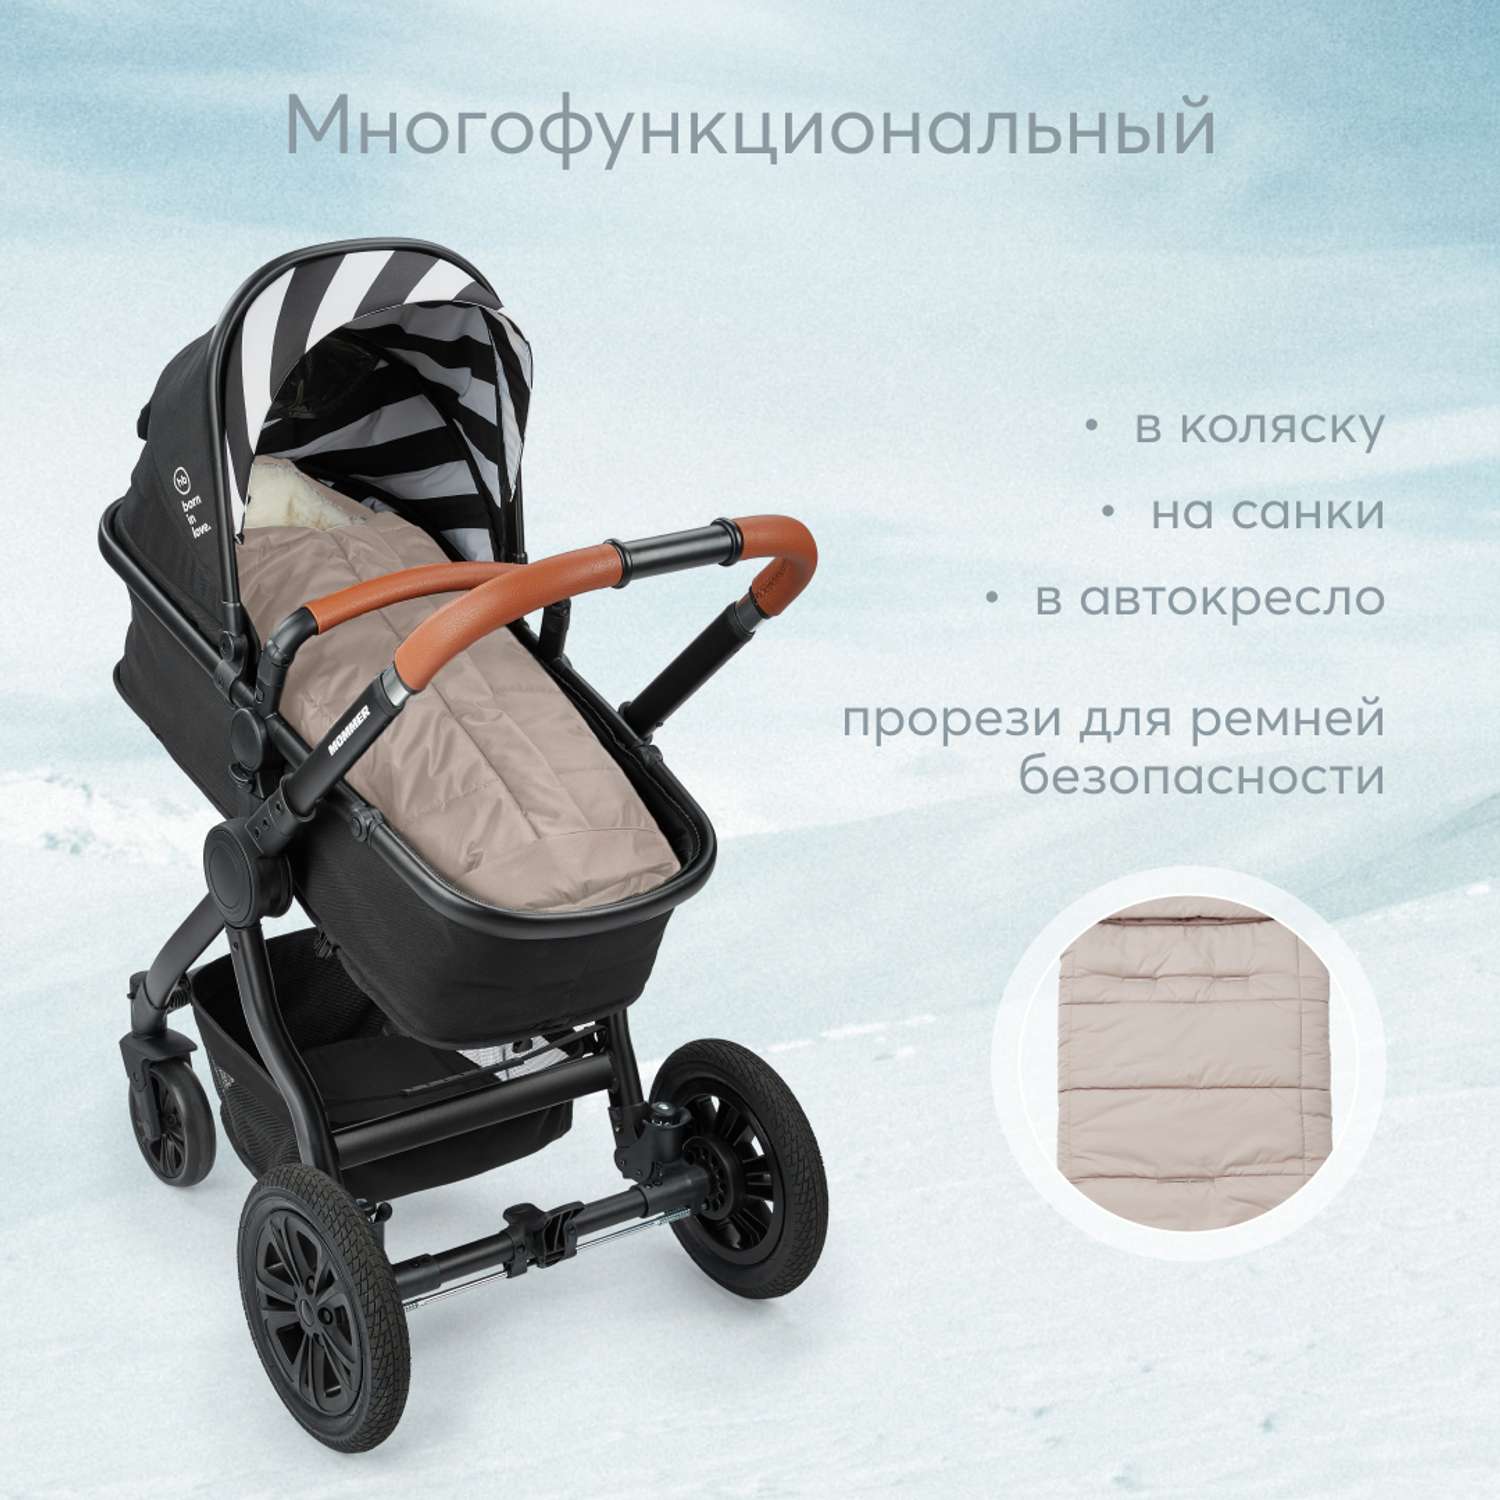 Конверт в коляску Happy Baby меховой для малышей до 1 года - фото 4